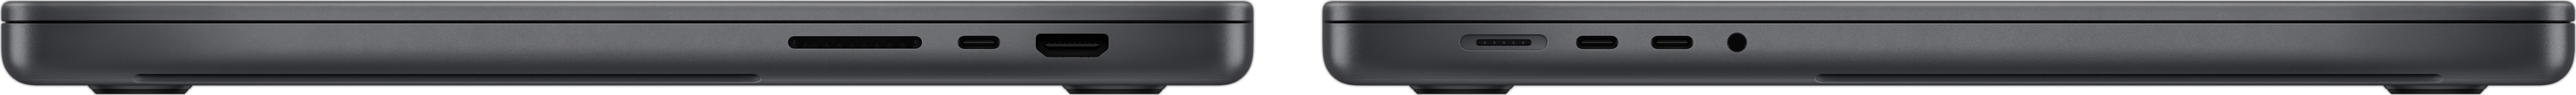 Seitenansicht des MacBook Pro, die den SDXC Kartensteckplatz, drei Thunderbolt 4 Anschlüsse, den HDMI Anschluss, den MagSafe 3 Ladeanschluss und den Kopfhöreranschluss zeigt.